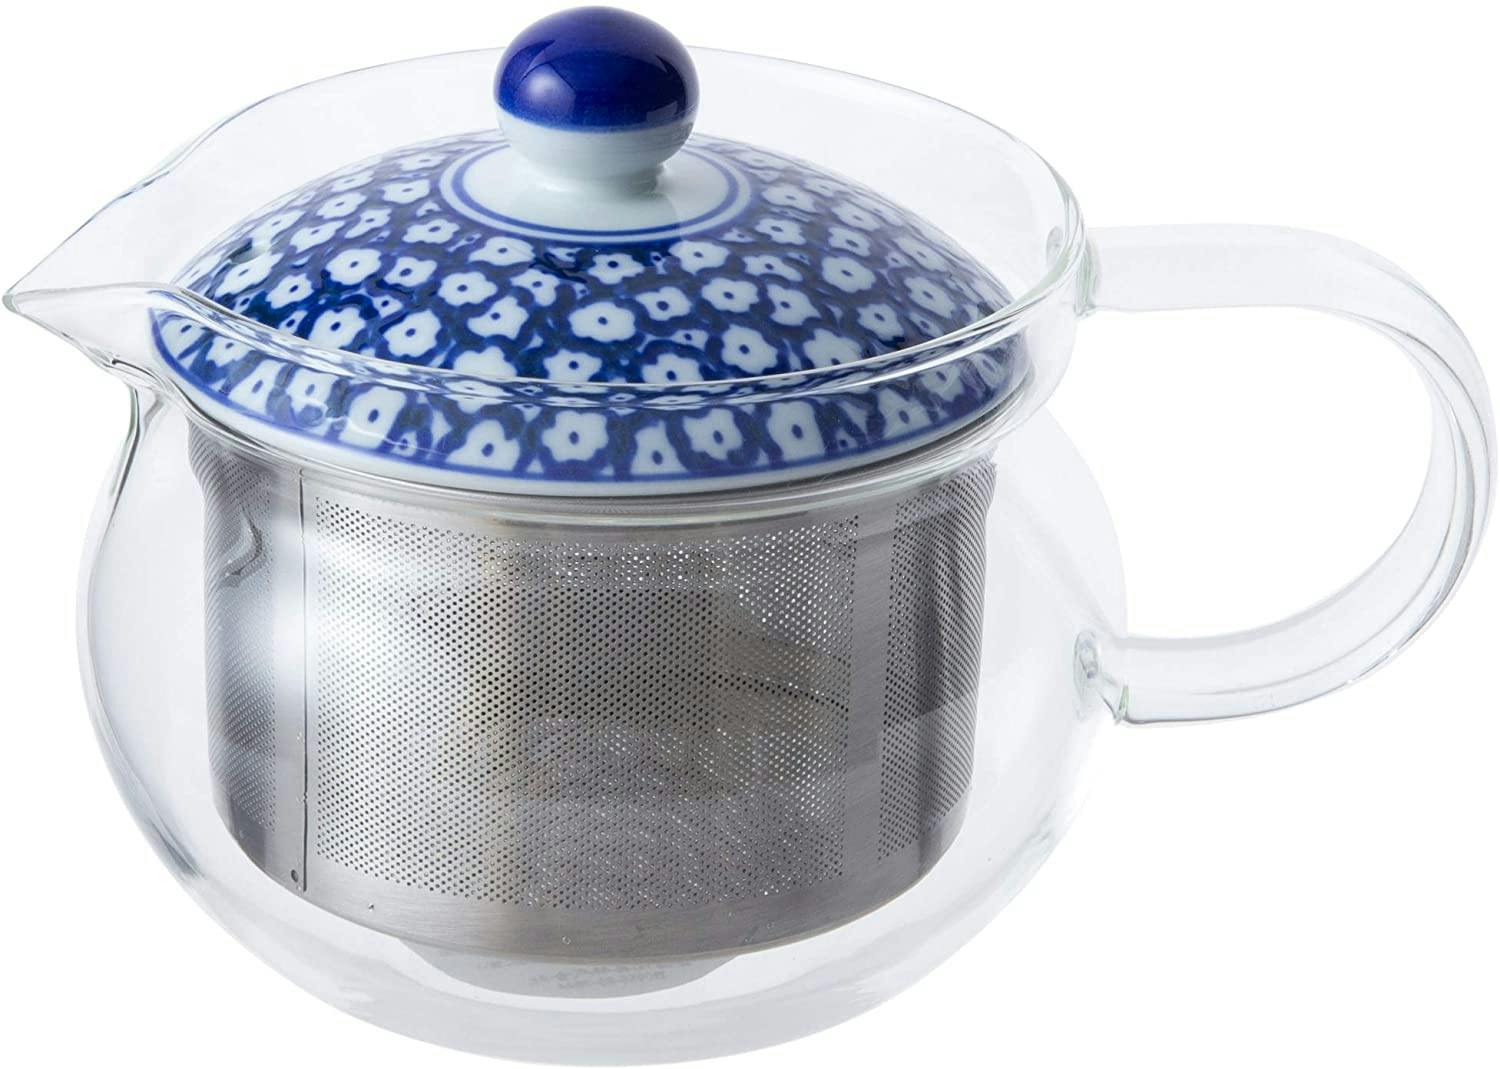 日本 著名瓷器品牌 波佐見焼 玻璃 茶壶 颜值品质 绝对在线